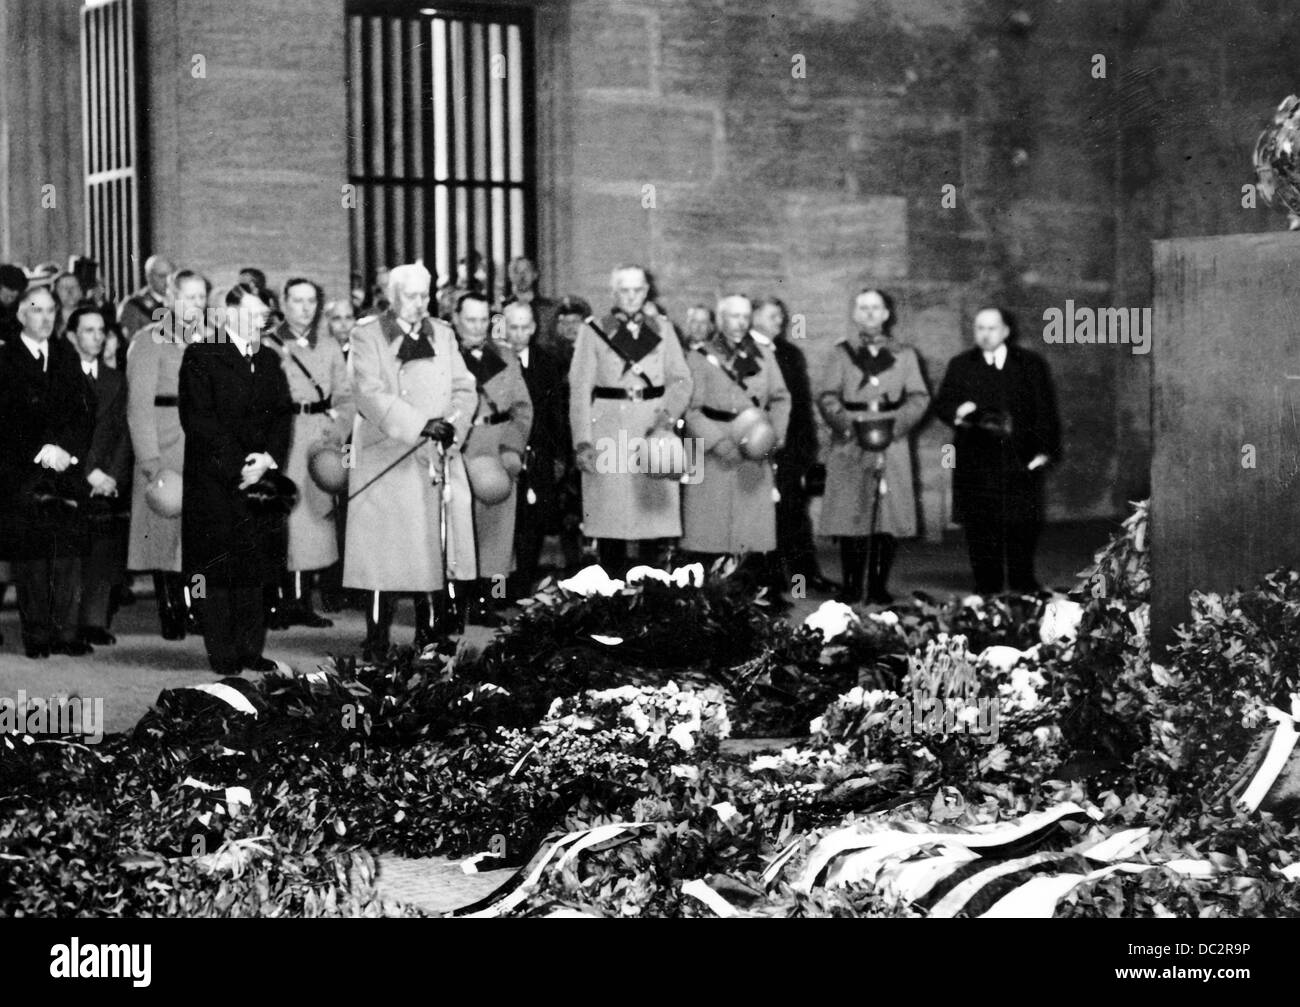 Le président du Reich Paul von Hindenburg (m) est photographié à côté du chancelier du Reich Adolf Hitler (l) à Neue Wache à Berlin, en Allemagne, le jour de commémoration des héros le 25 février 1934. En arrière-plan à gauche, le vice-chancelier Franz von Papen, le ministre de Reich Joseph Goebbels, qui compte 2 L. À droite, à côté de Hindenburg, le ministre Reich Hermann Göring. Fotoarchiv für Zeitgeschichte Banque D'Images